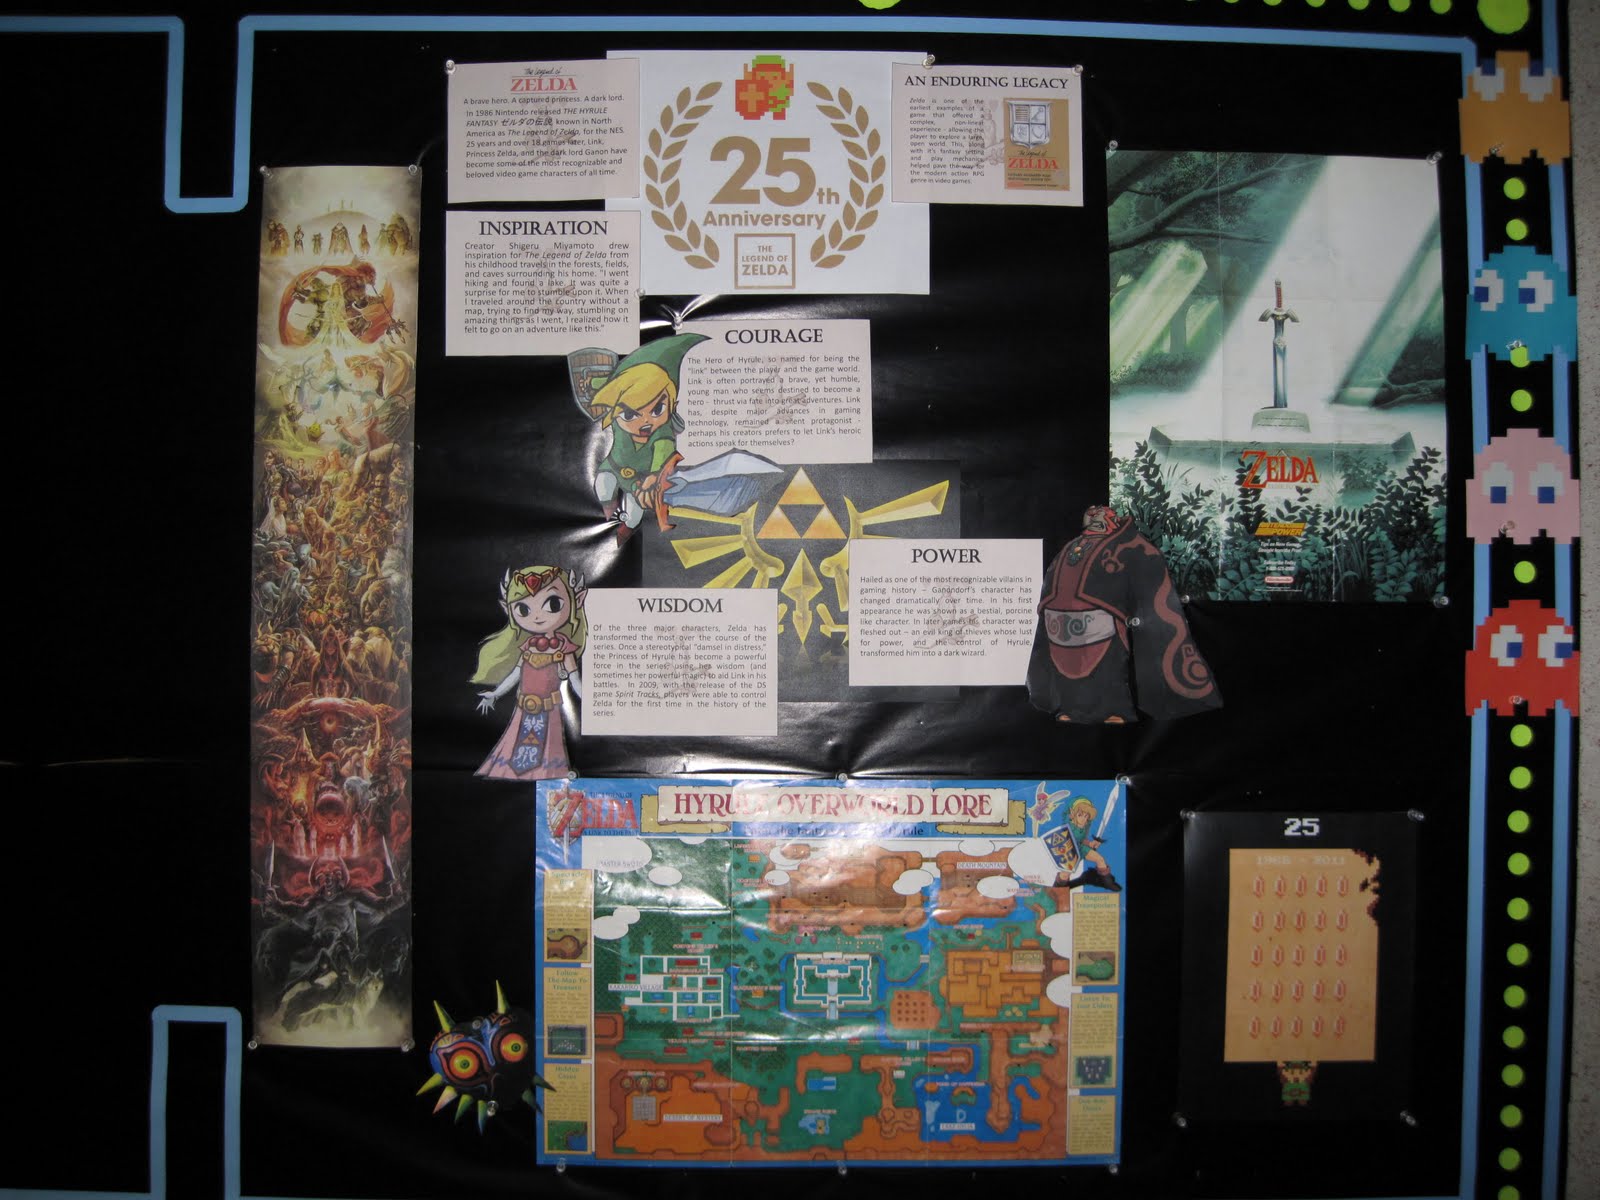 Legend of Zelda display